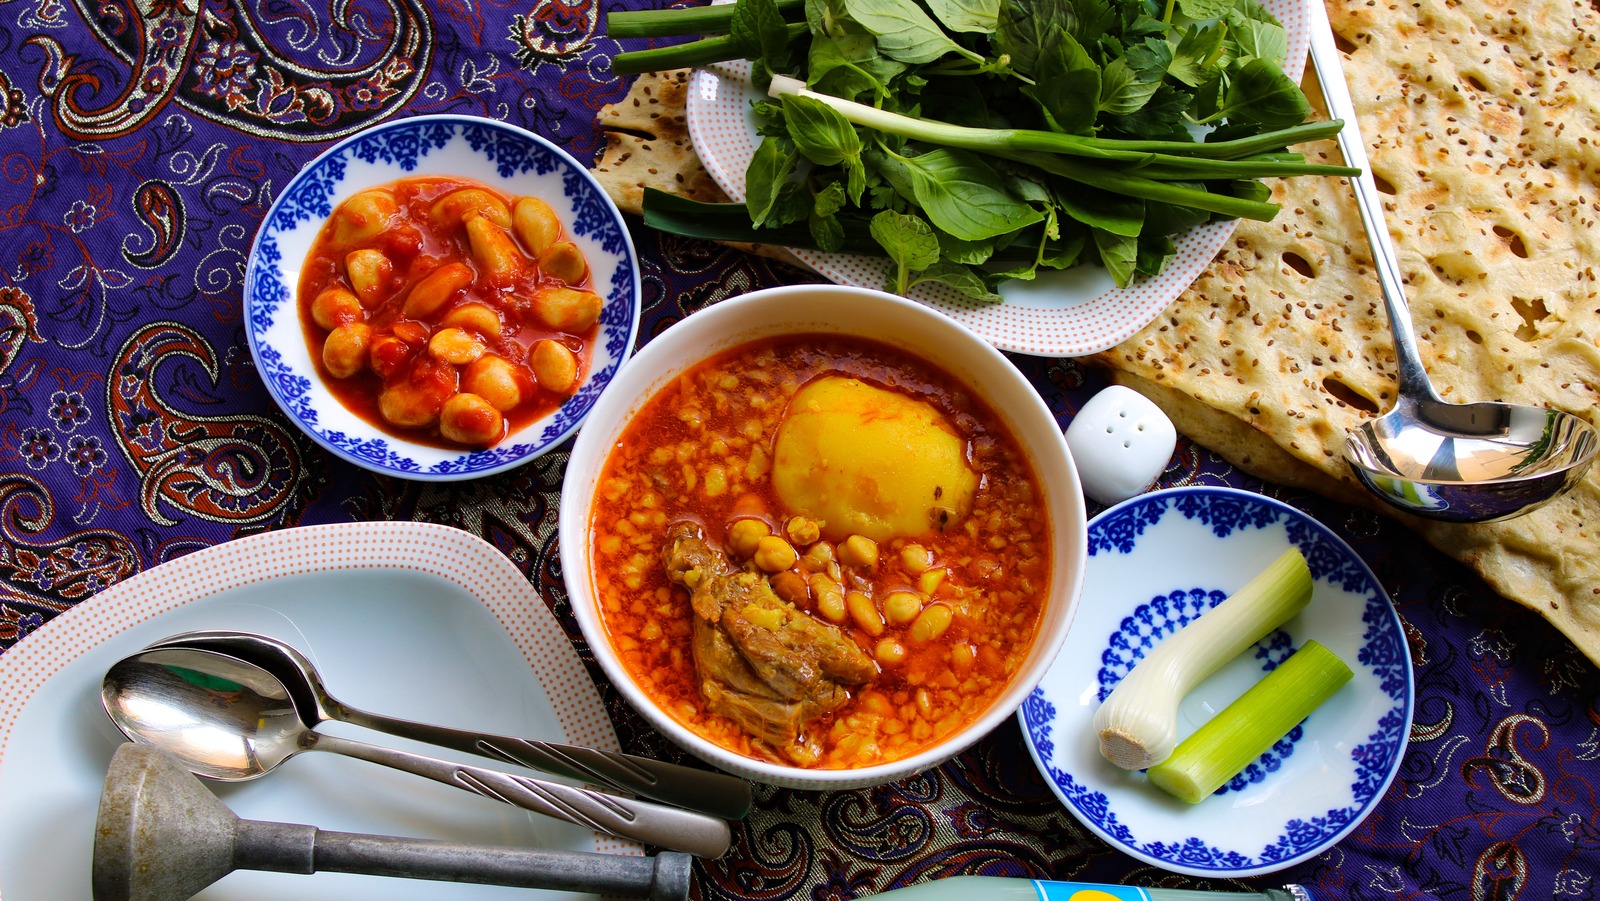 Large Persian Cooking Dizi Pot - BUY PERSIAN DIZI POT WORLDWIDE